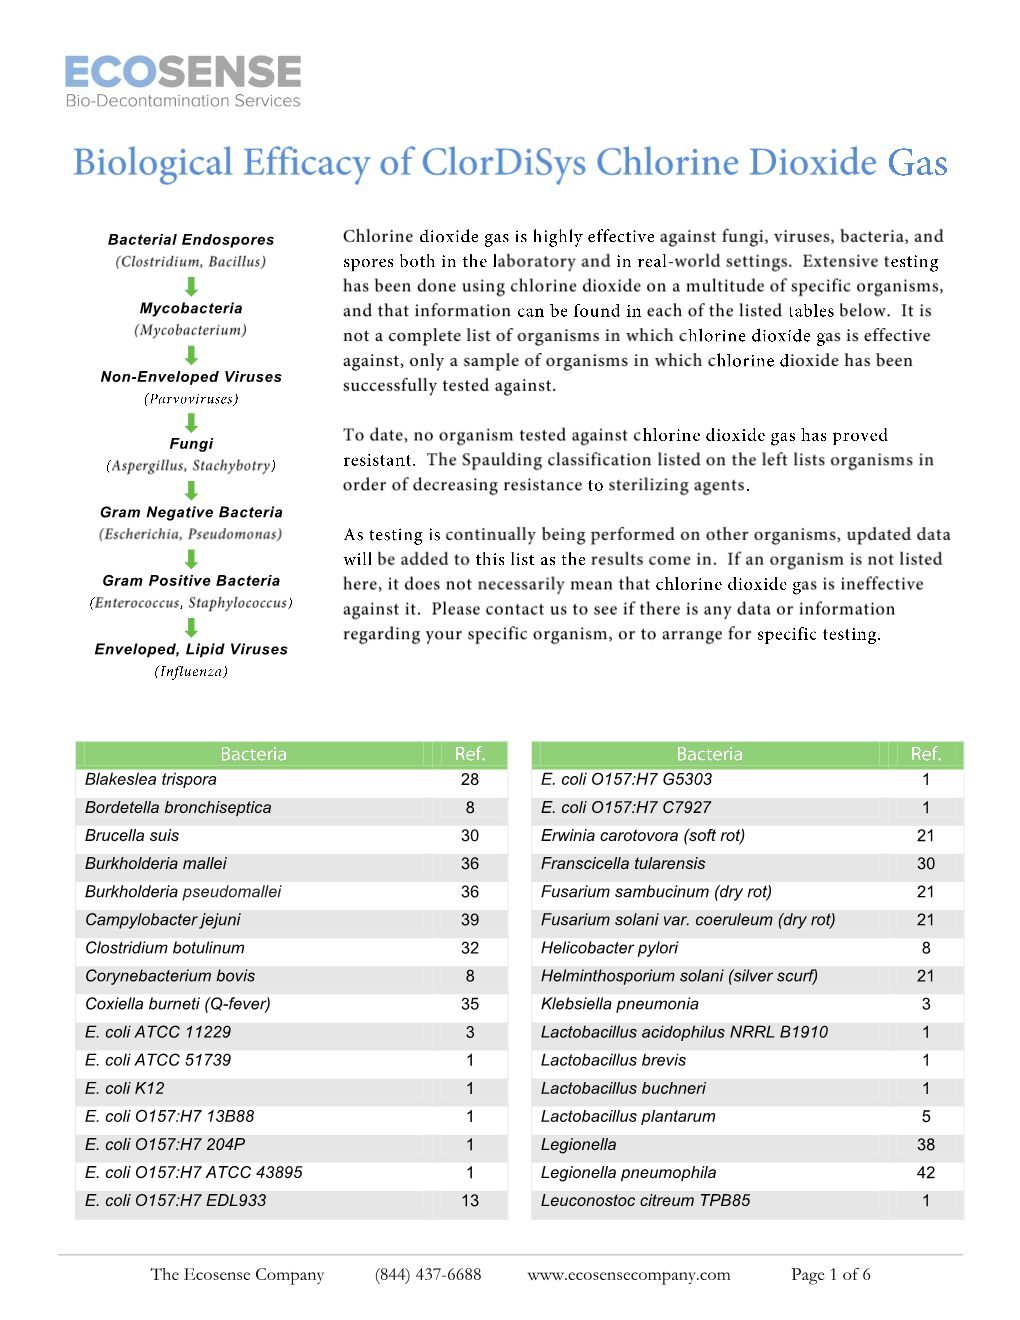 Gaseous Chlorine Dioxide